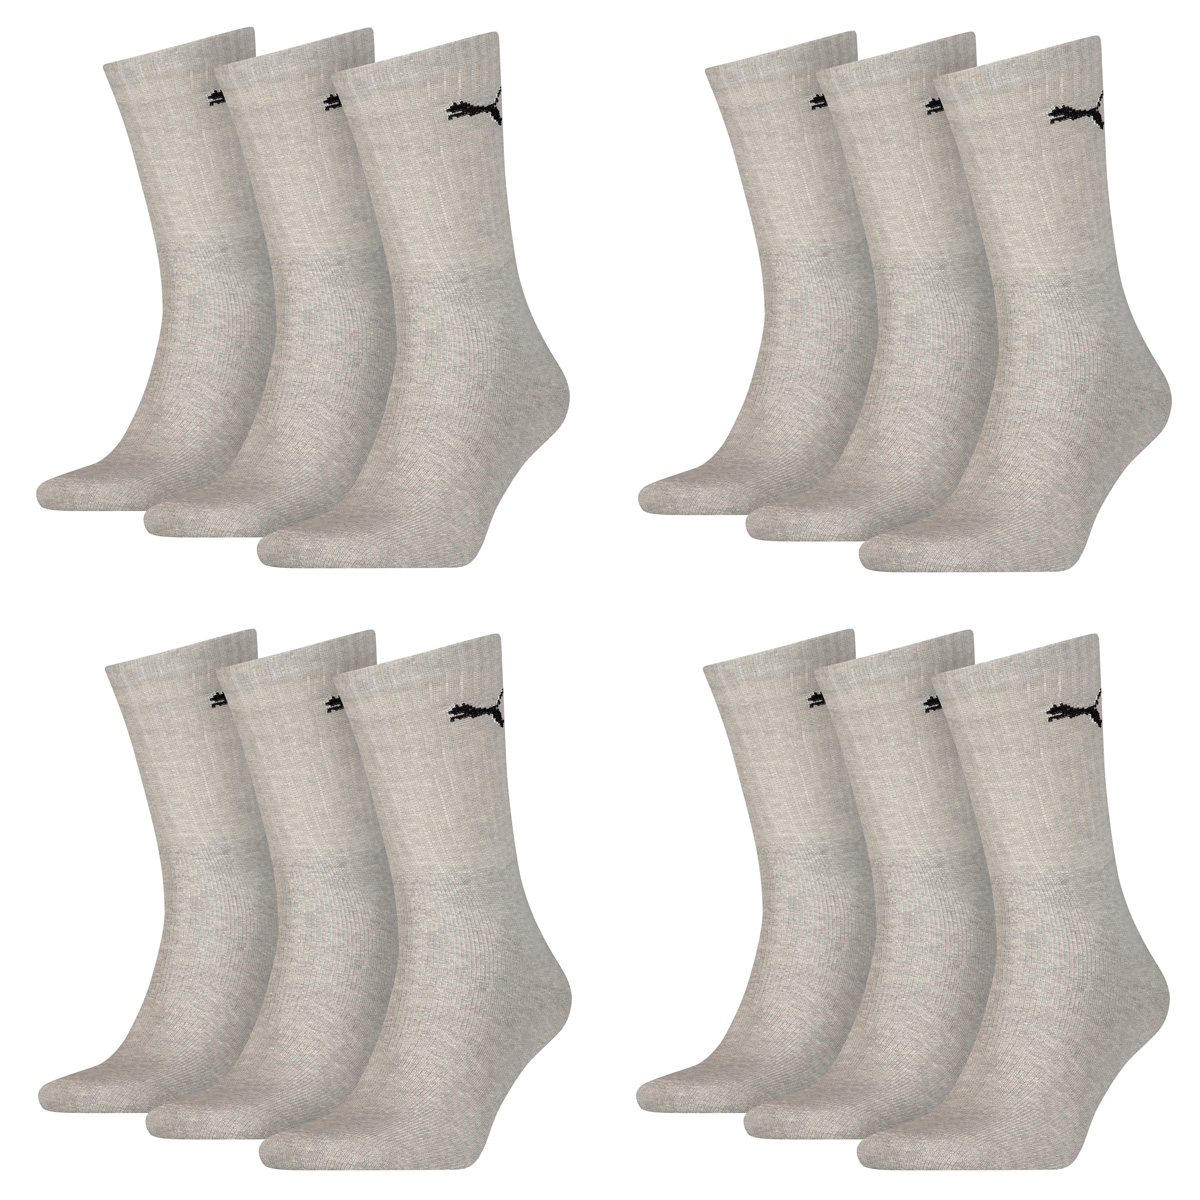 12 Paar Puma Sportsocken Tennis Socken Gr. 35 - 49 Unisex für sie und ihn